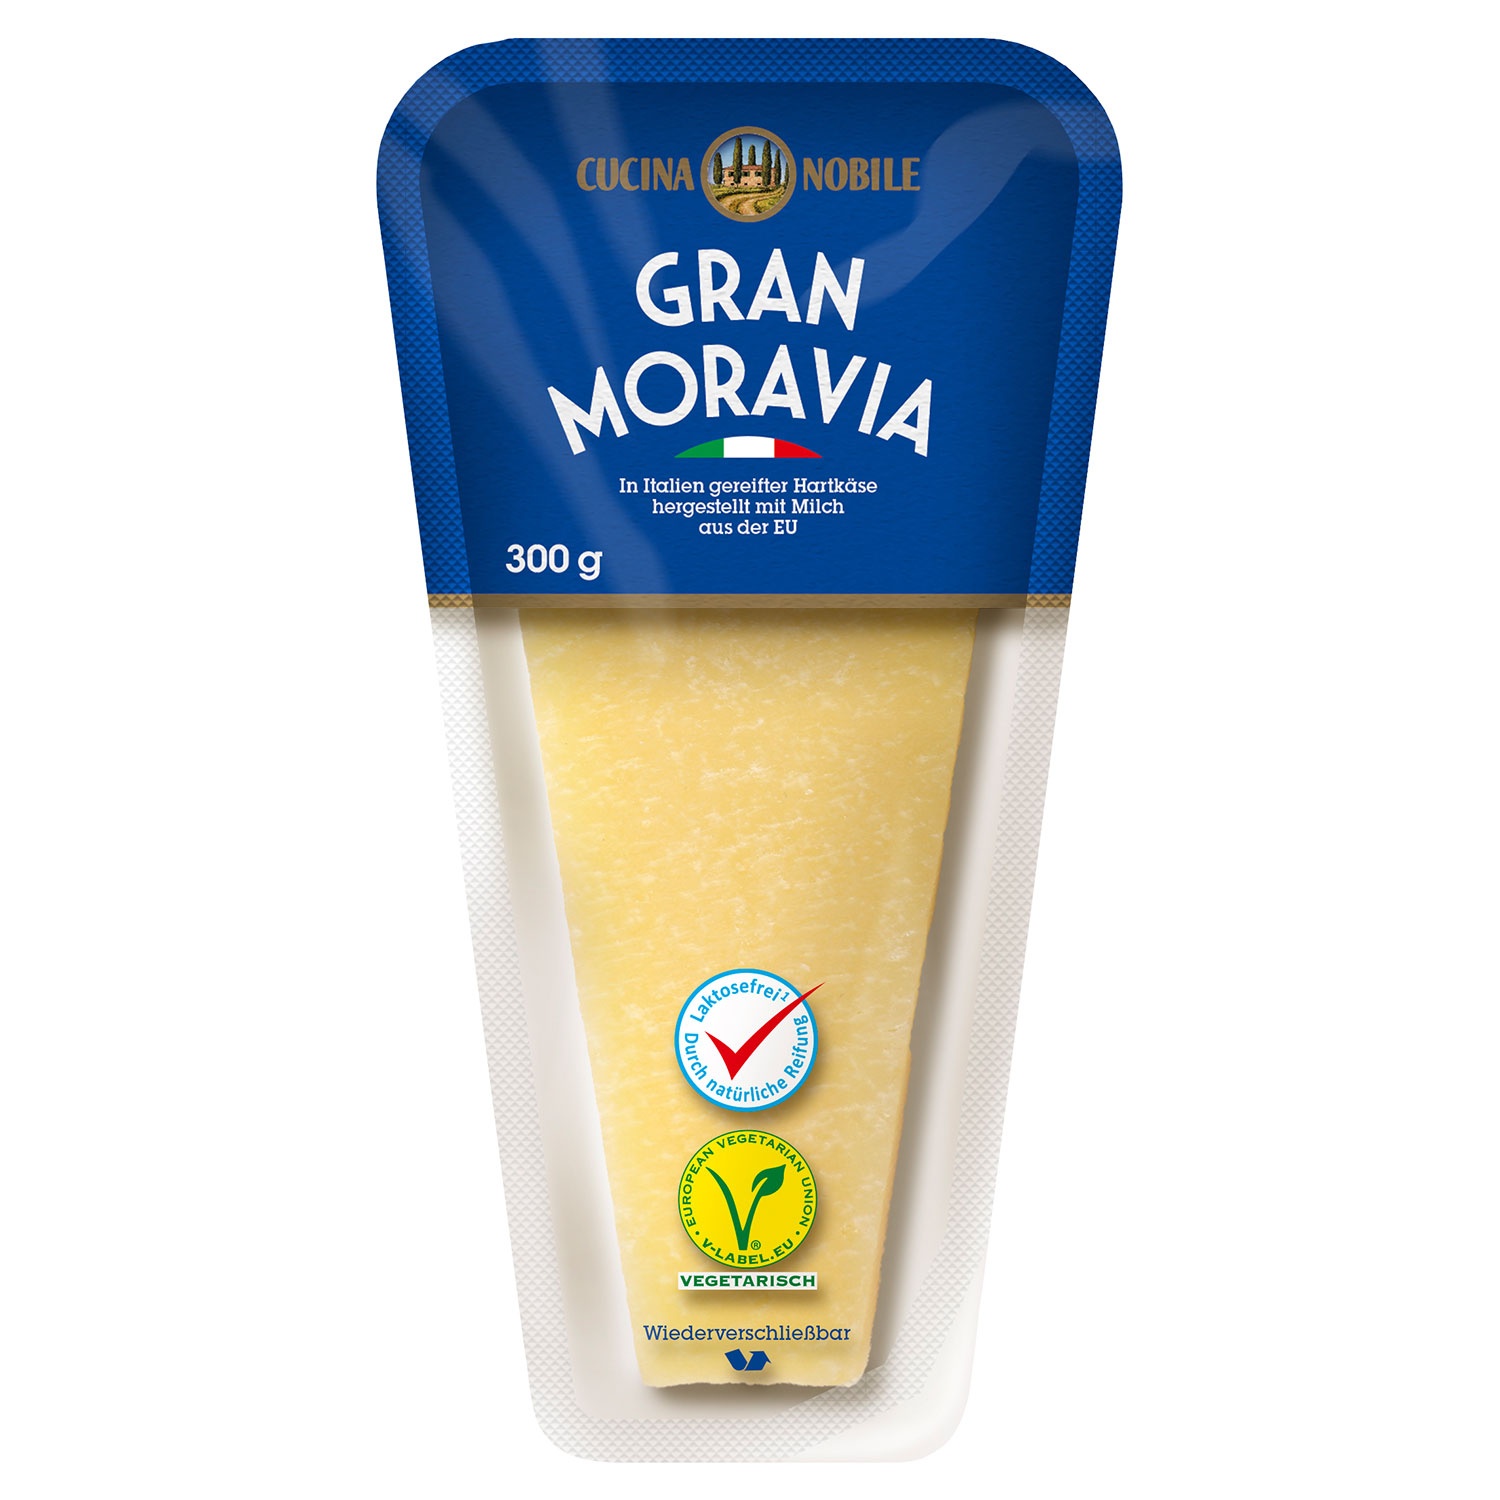 CUCINA NOBILE Gran Moravia 300 g